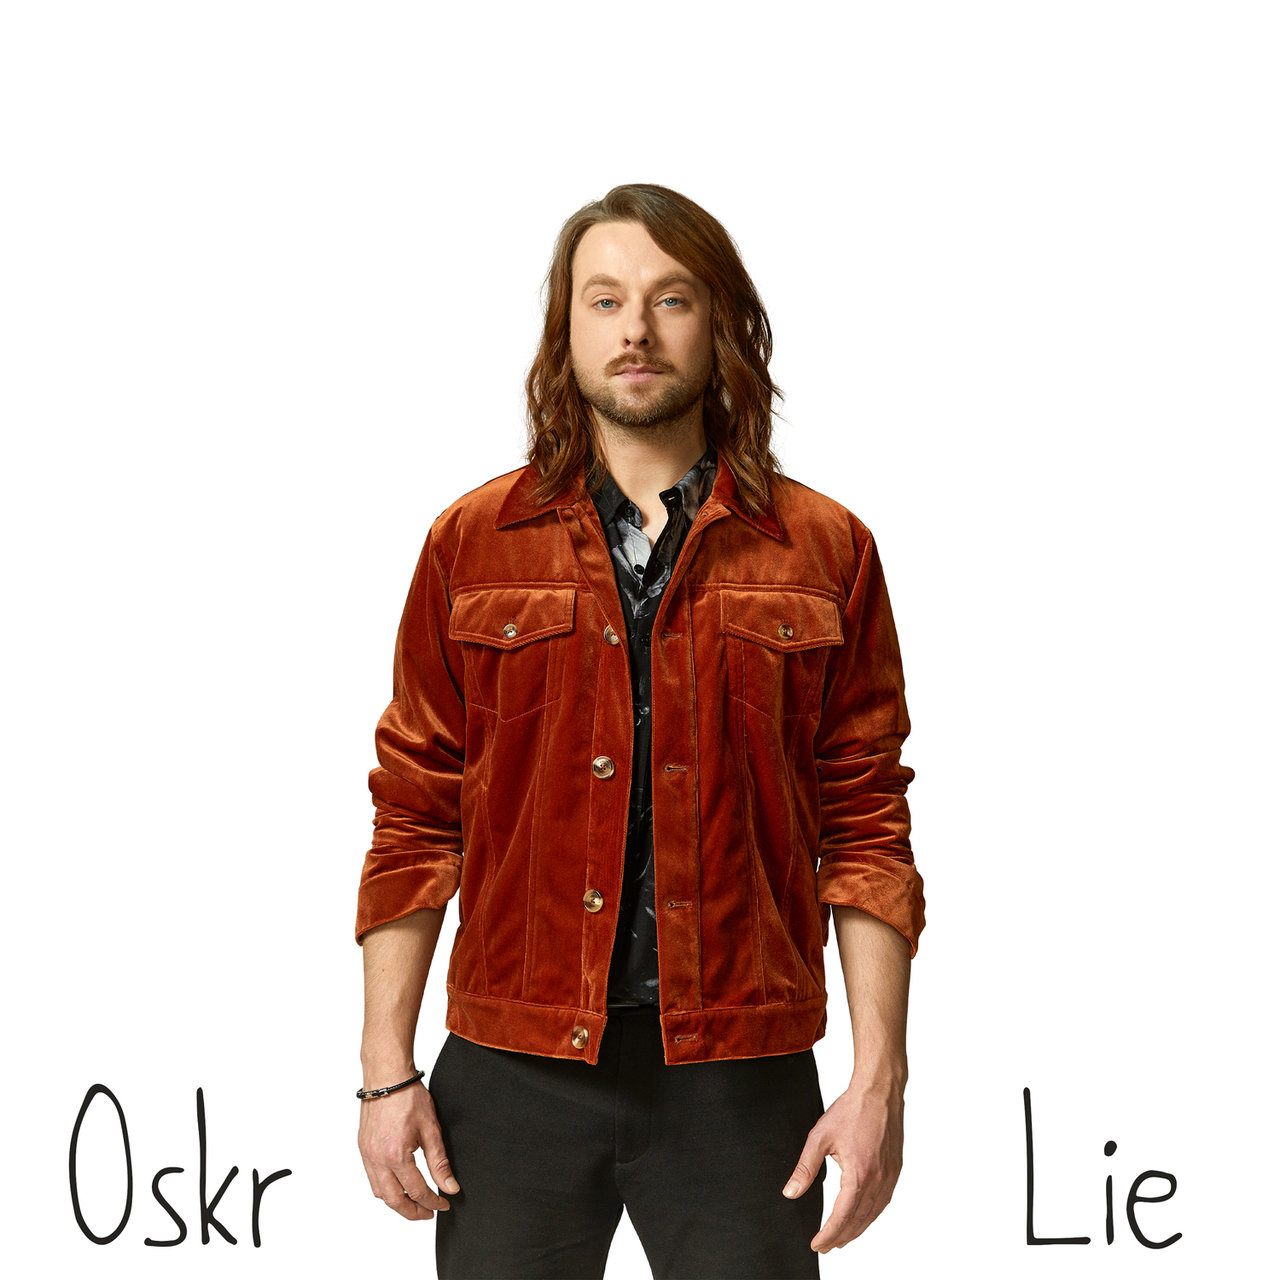 Oskr — Lie cover artwork